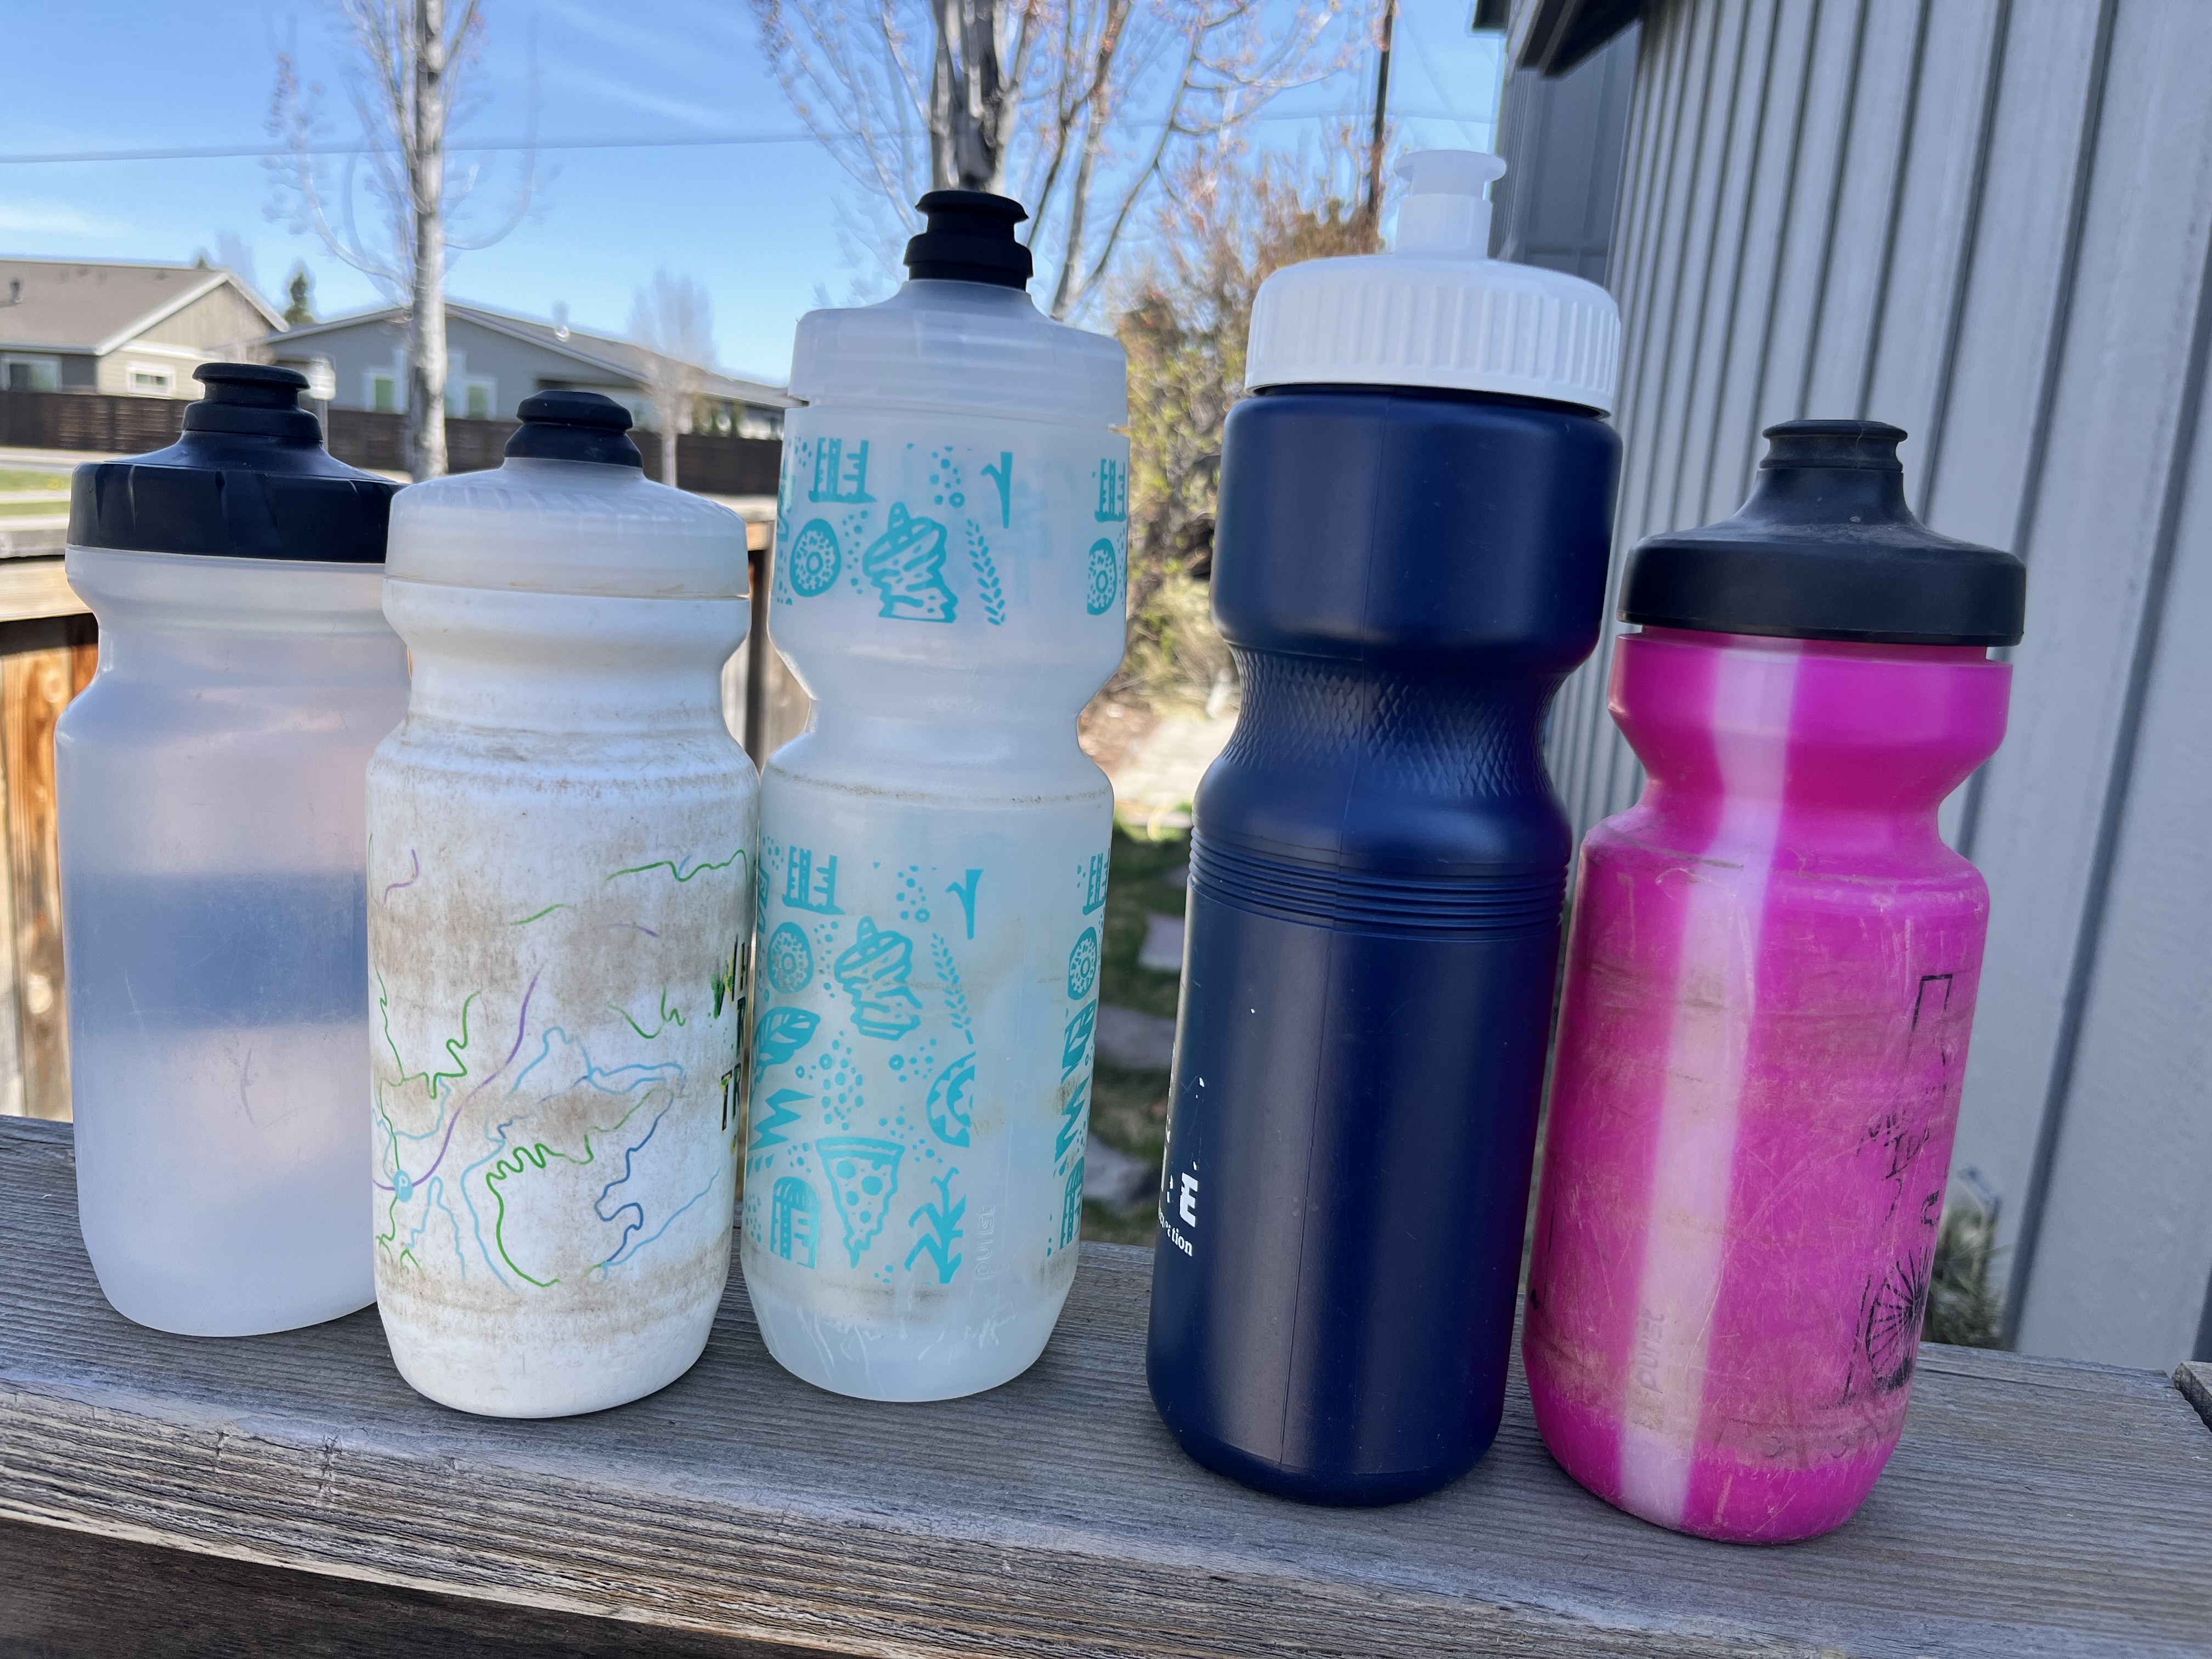 Several mountain biking water bottles